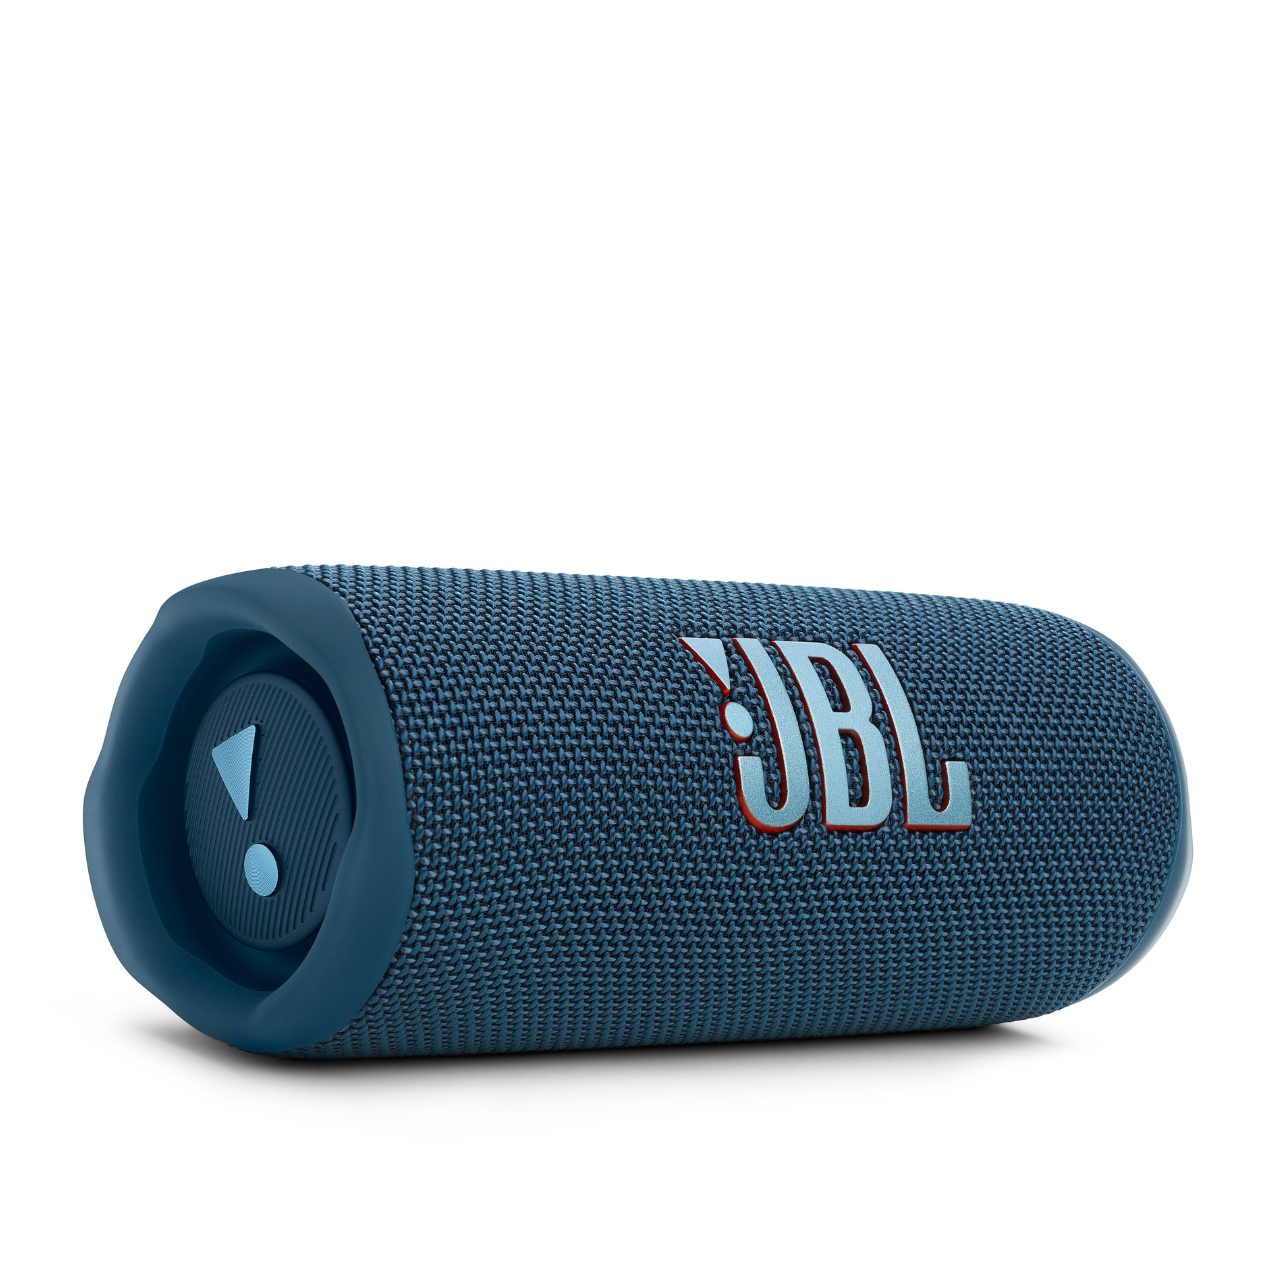 MY Speakers JBL - Buy Online Flip 6, Portable JBL Store